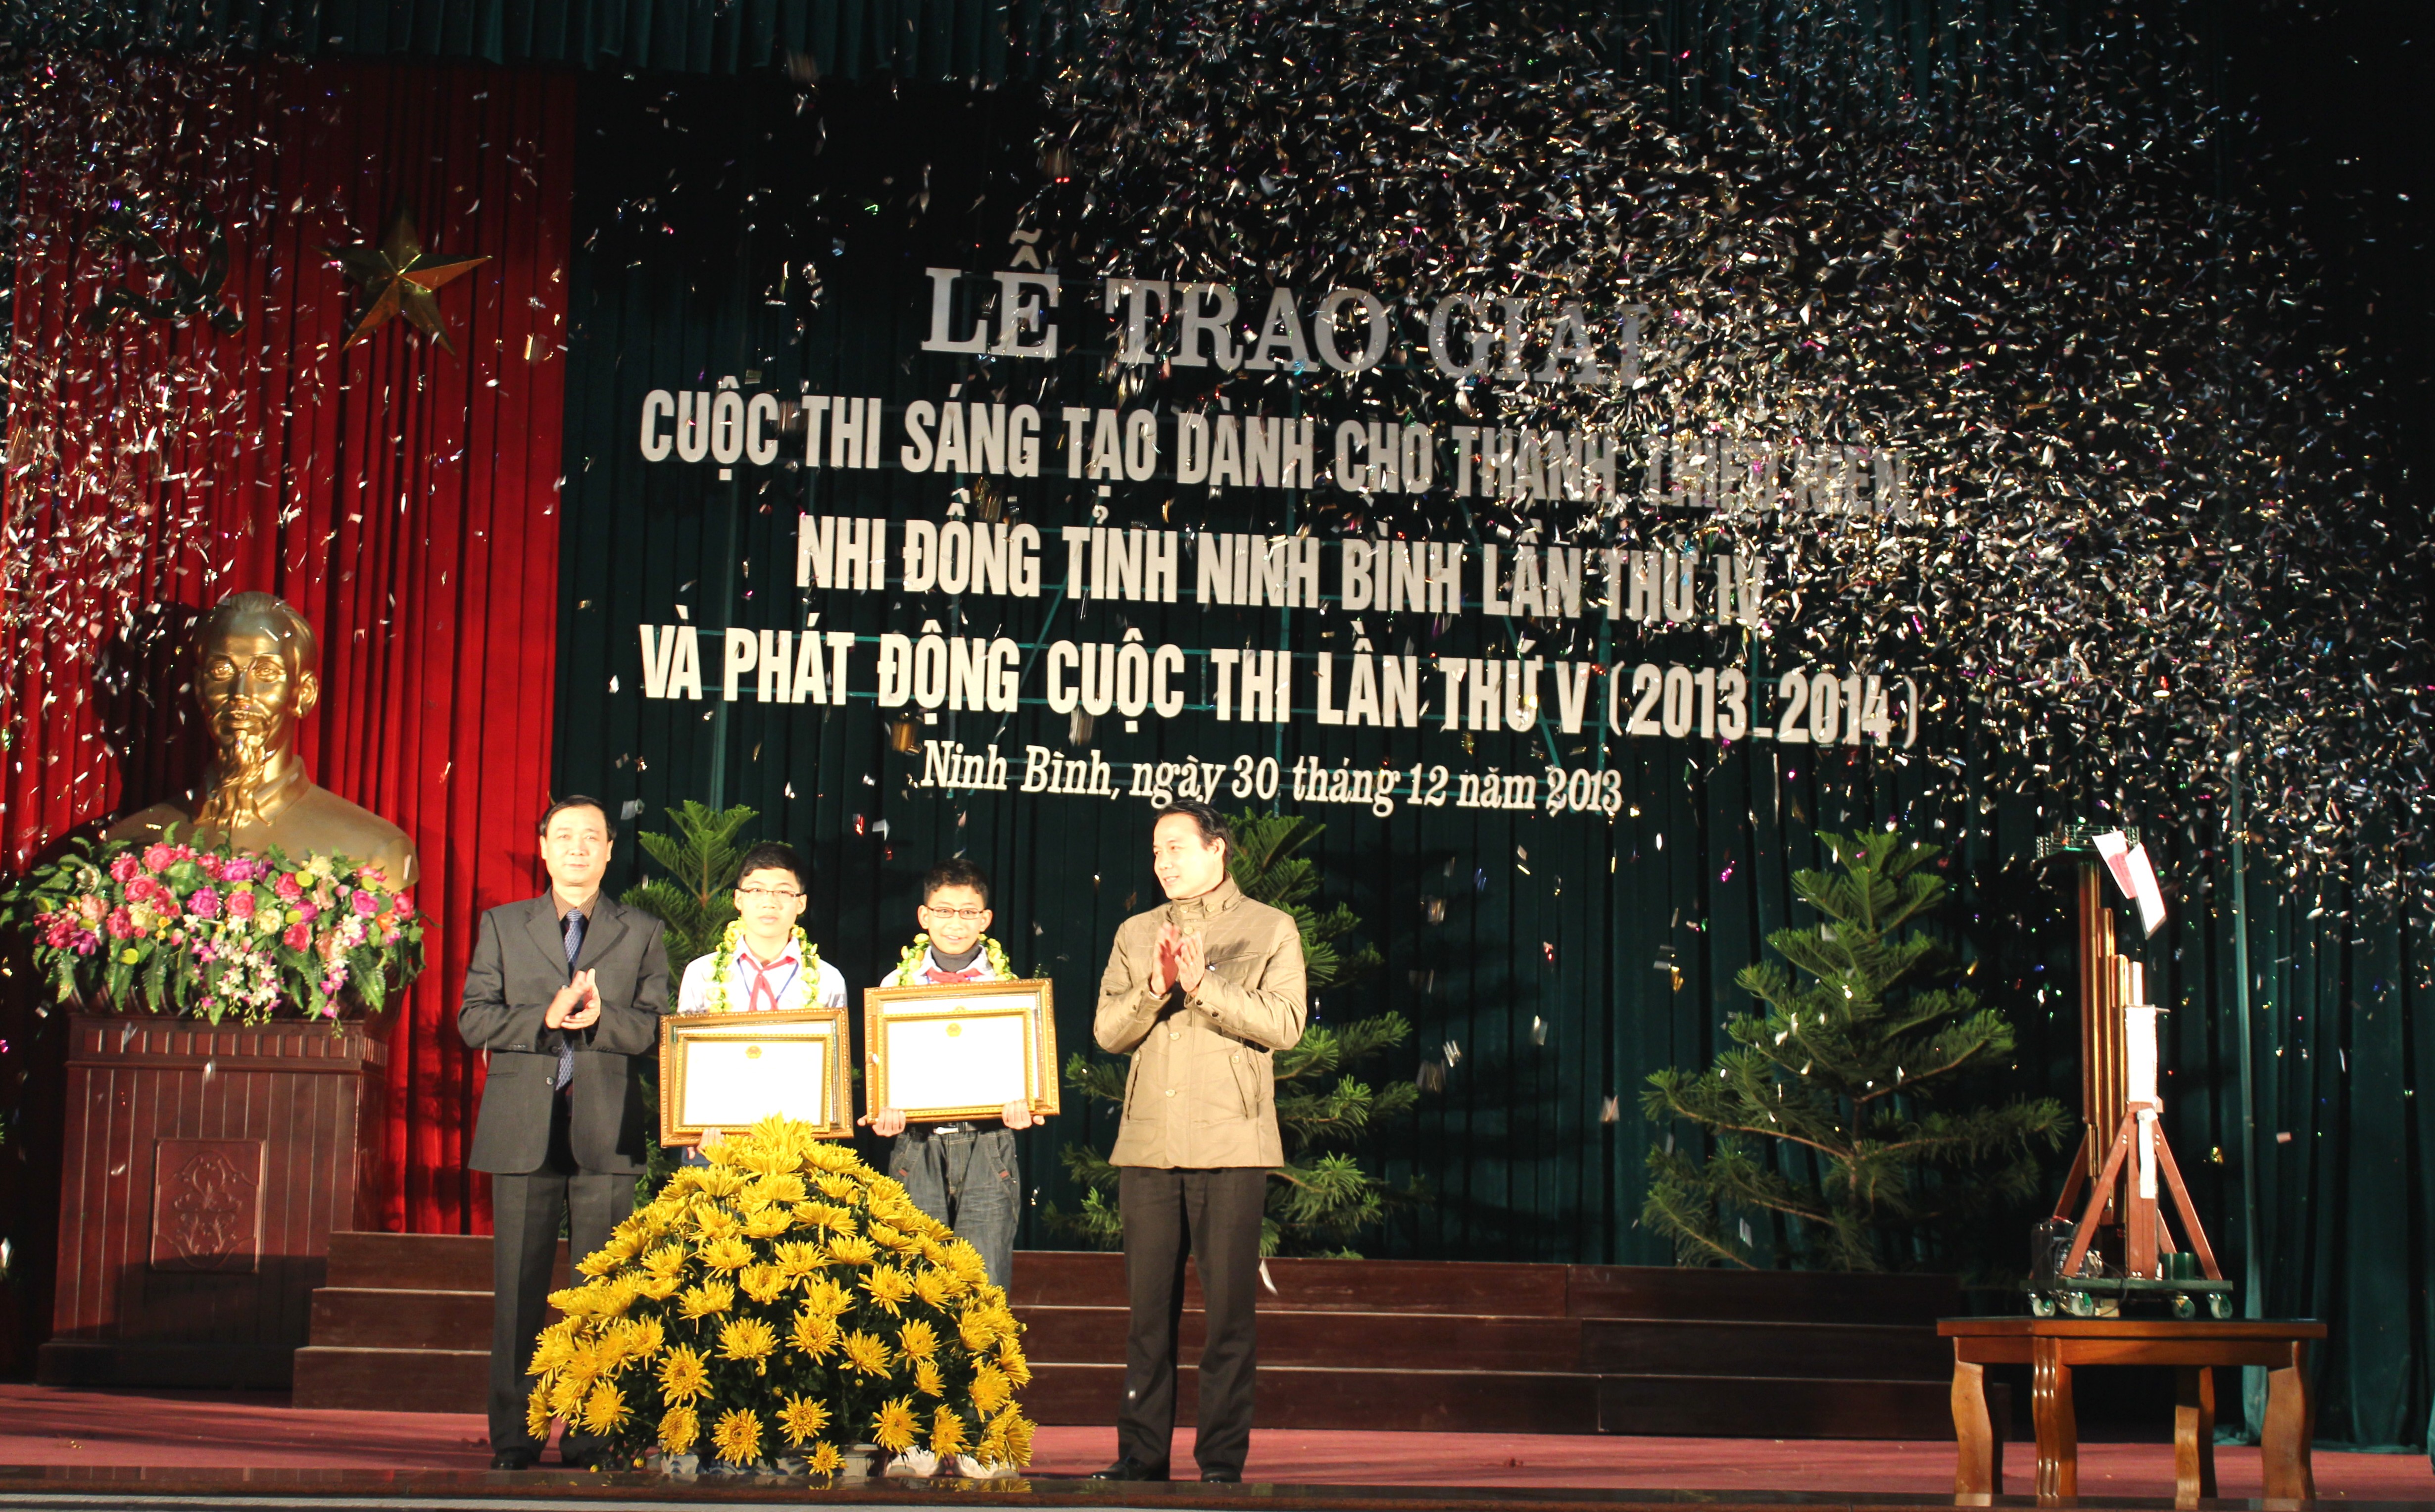 Lễ Trao giải cuộc thi sáng tạo Thanh, Thiếu niên và Nhi đồng tỉnh Ninh Bình lần thứ IV